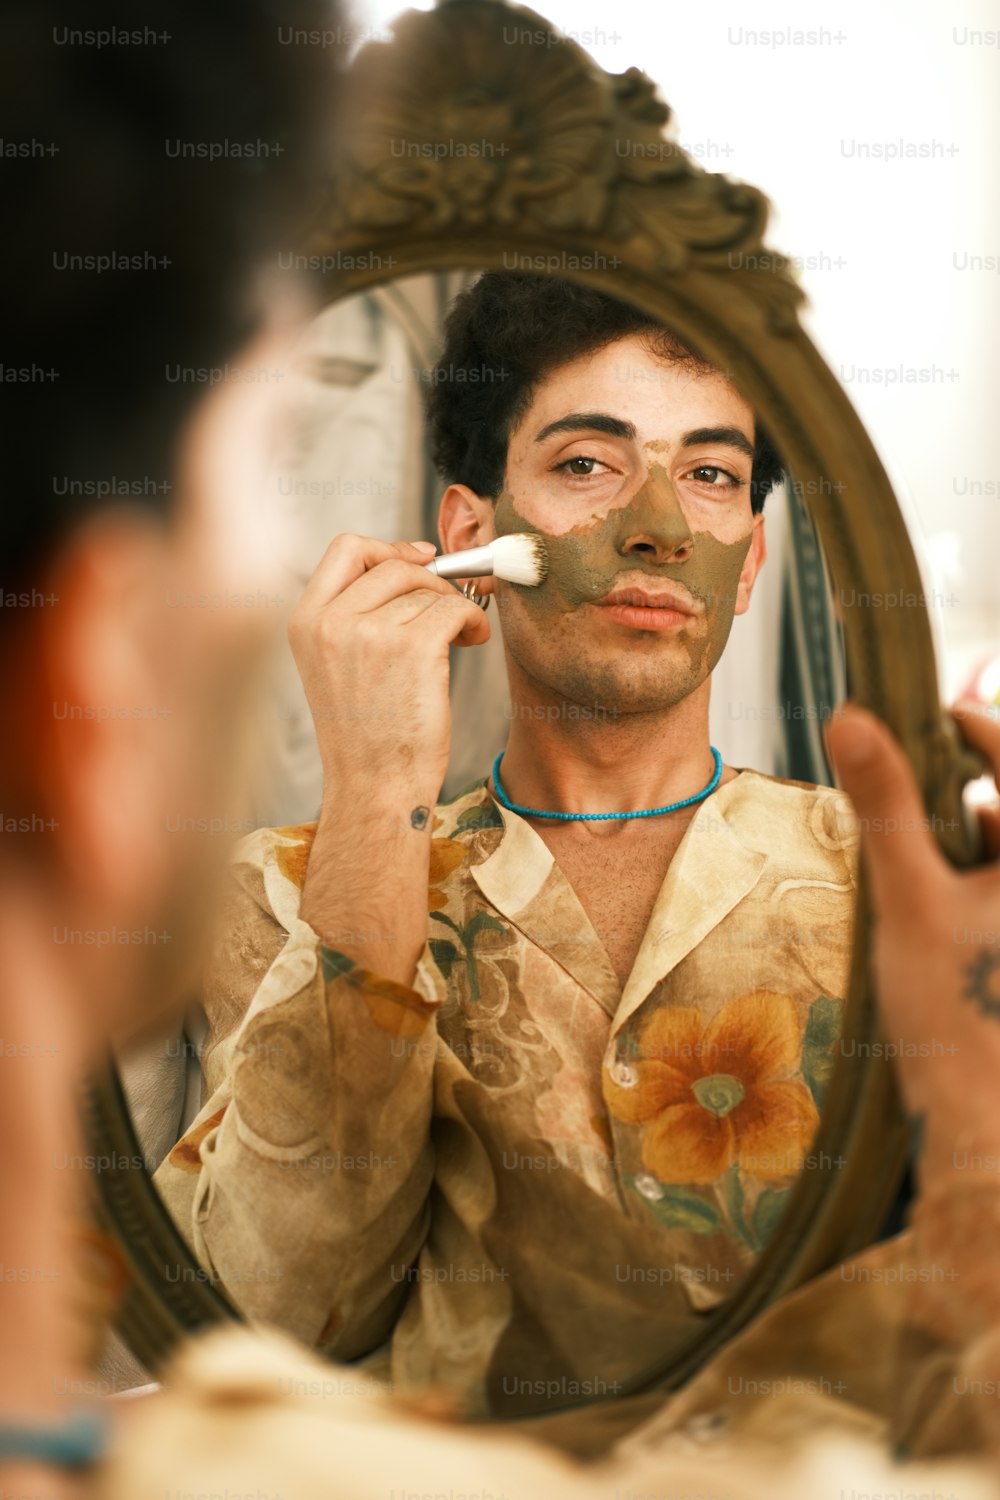 Un uomo che si rade la faccia davanti a uno specchio